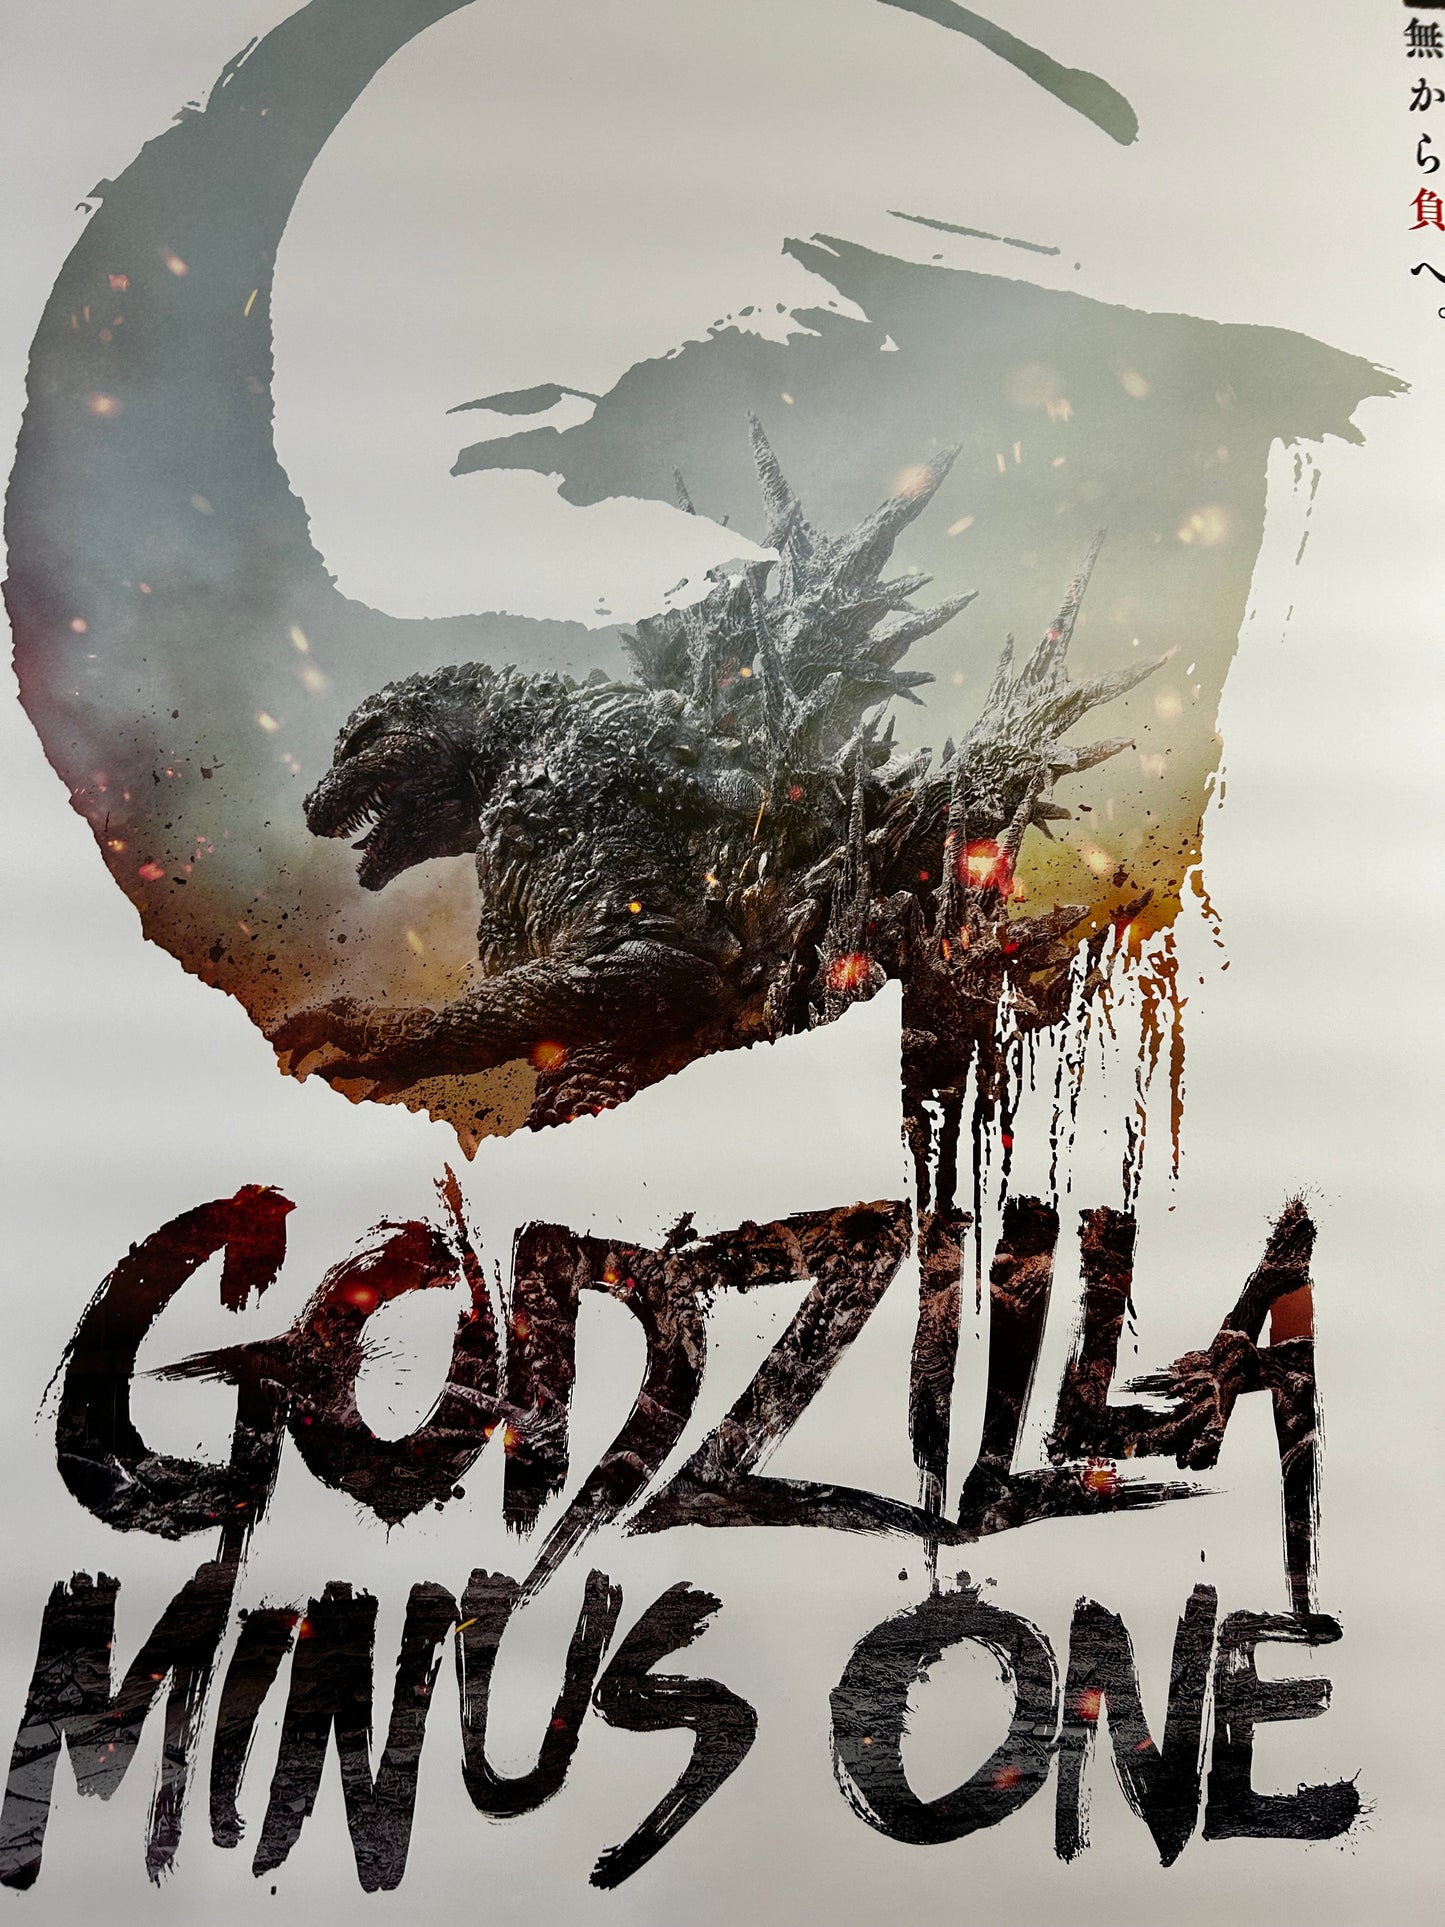 Godzilla Minus One Original One Sheet Poster 2023